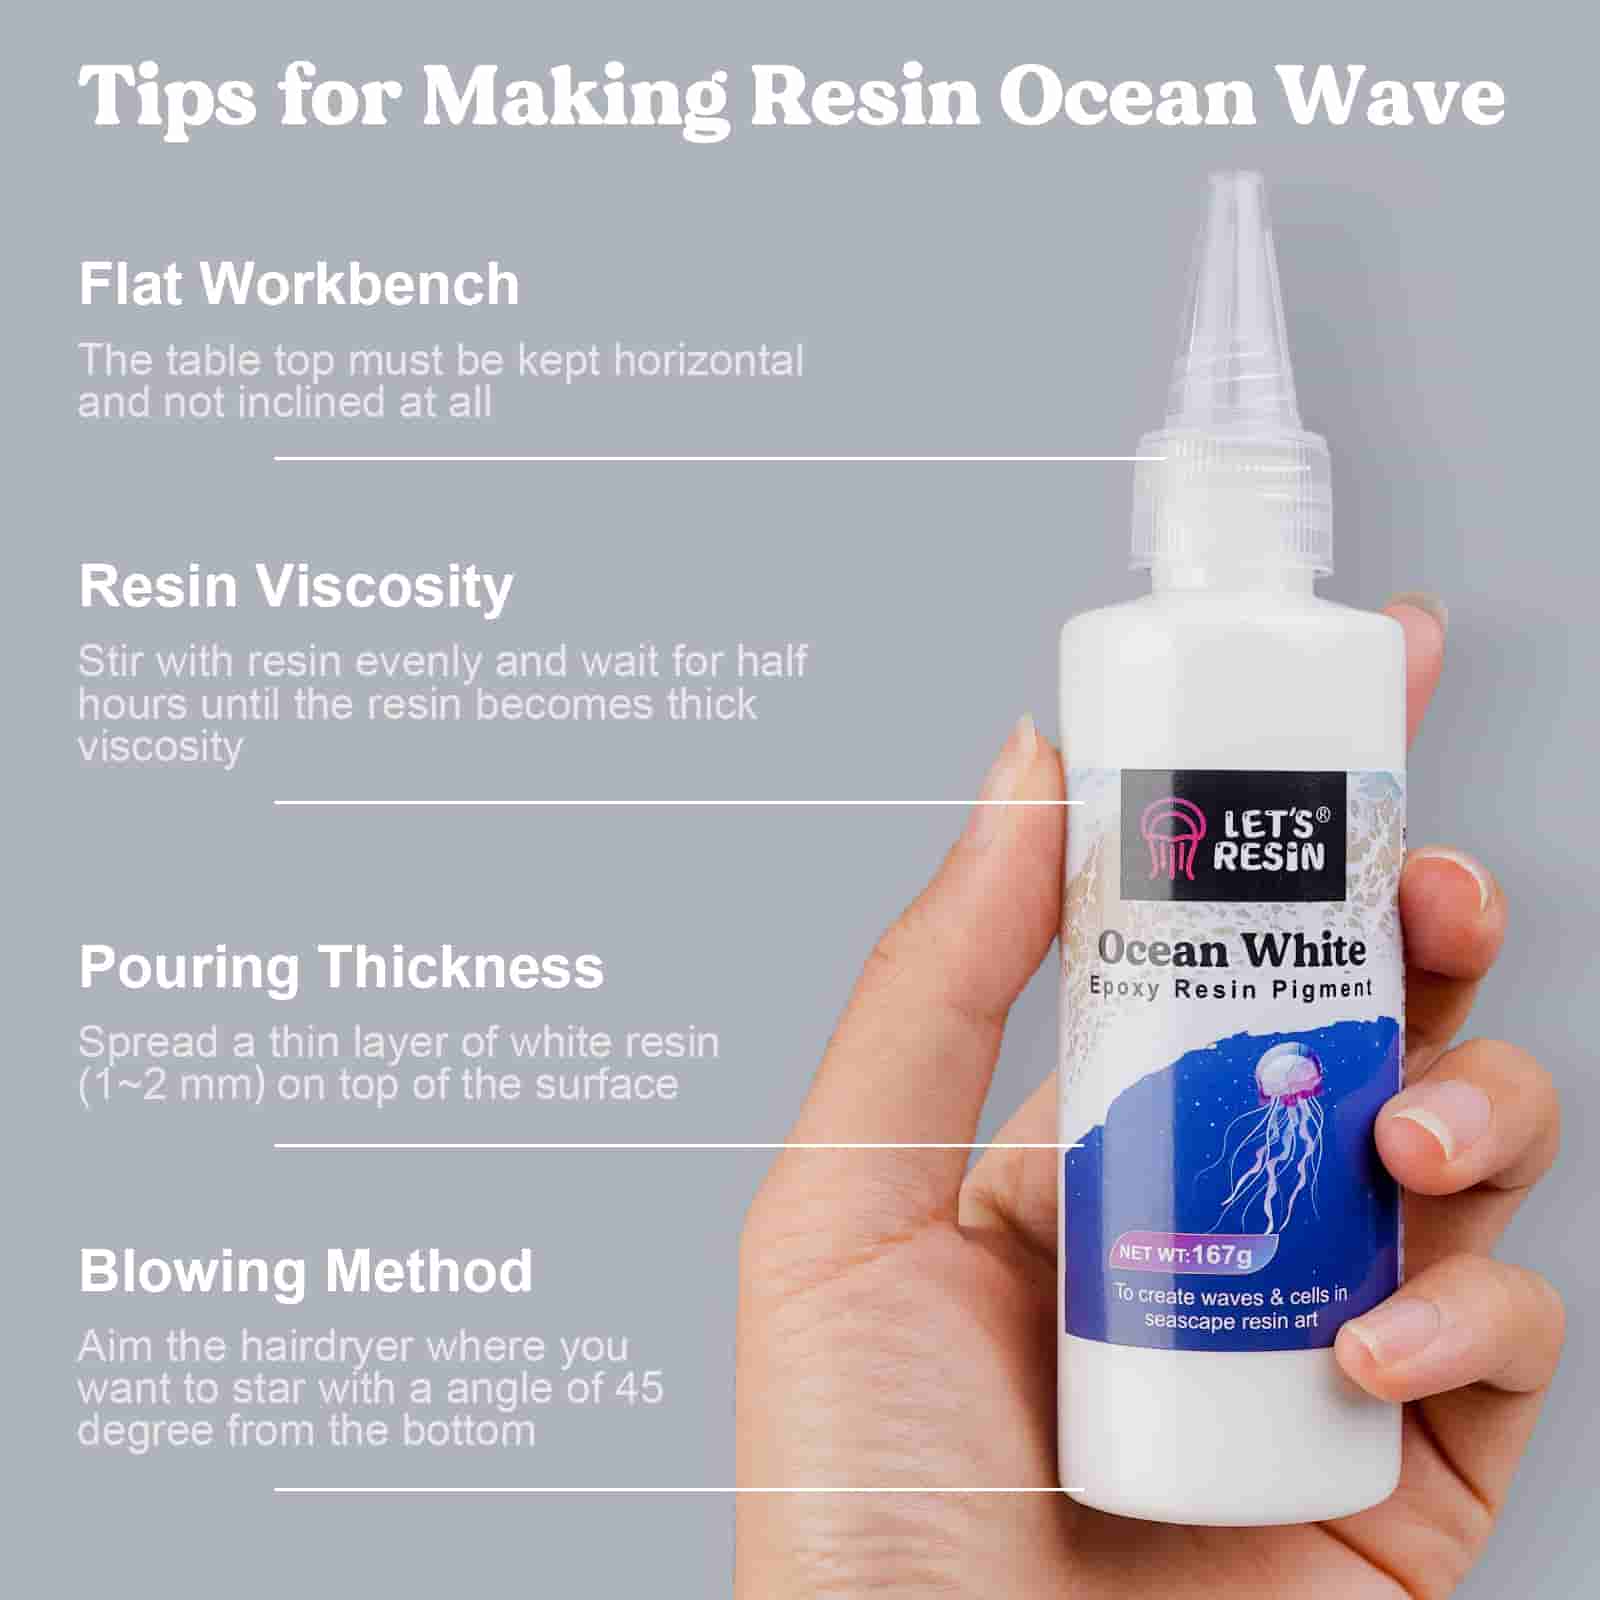 Ocean White Epoxy Resin Pigment - 167g/5.89oz